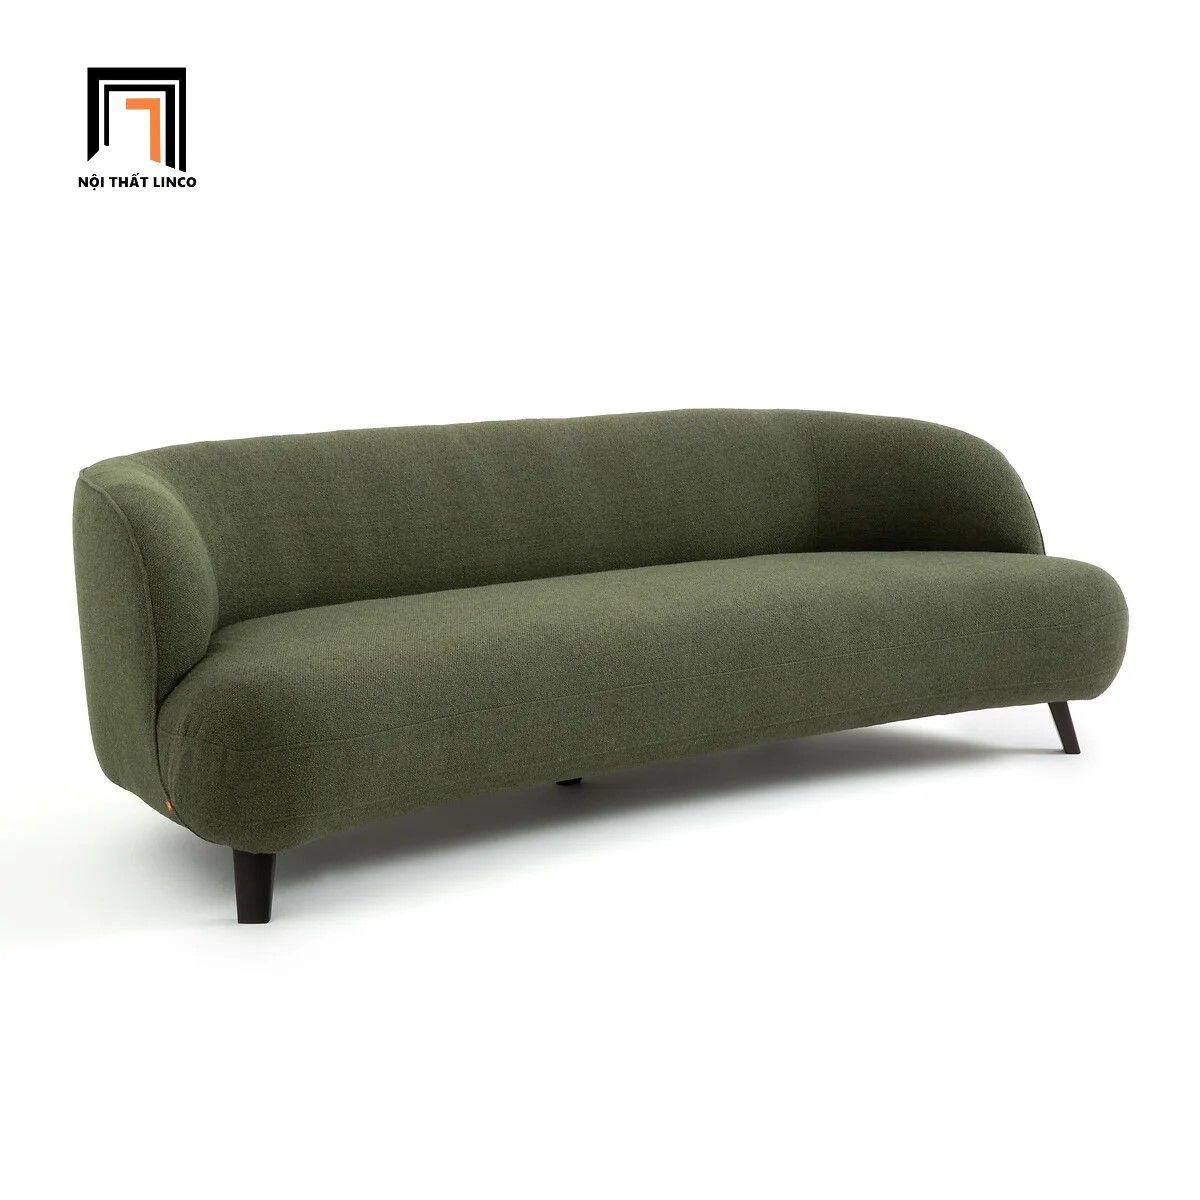  Ghế sofa băng cong giá rẻ BT94 Callina dài 2m màu xanh đậm 